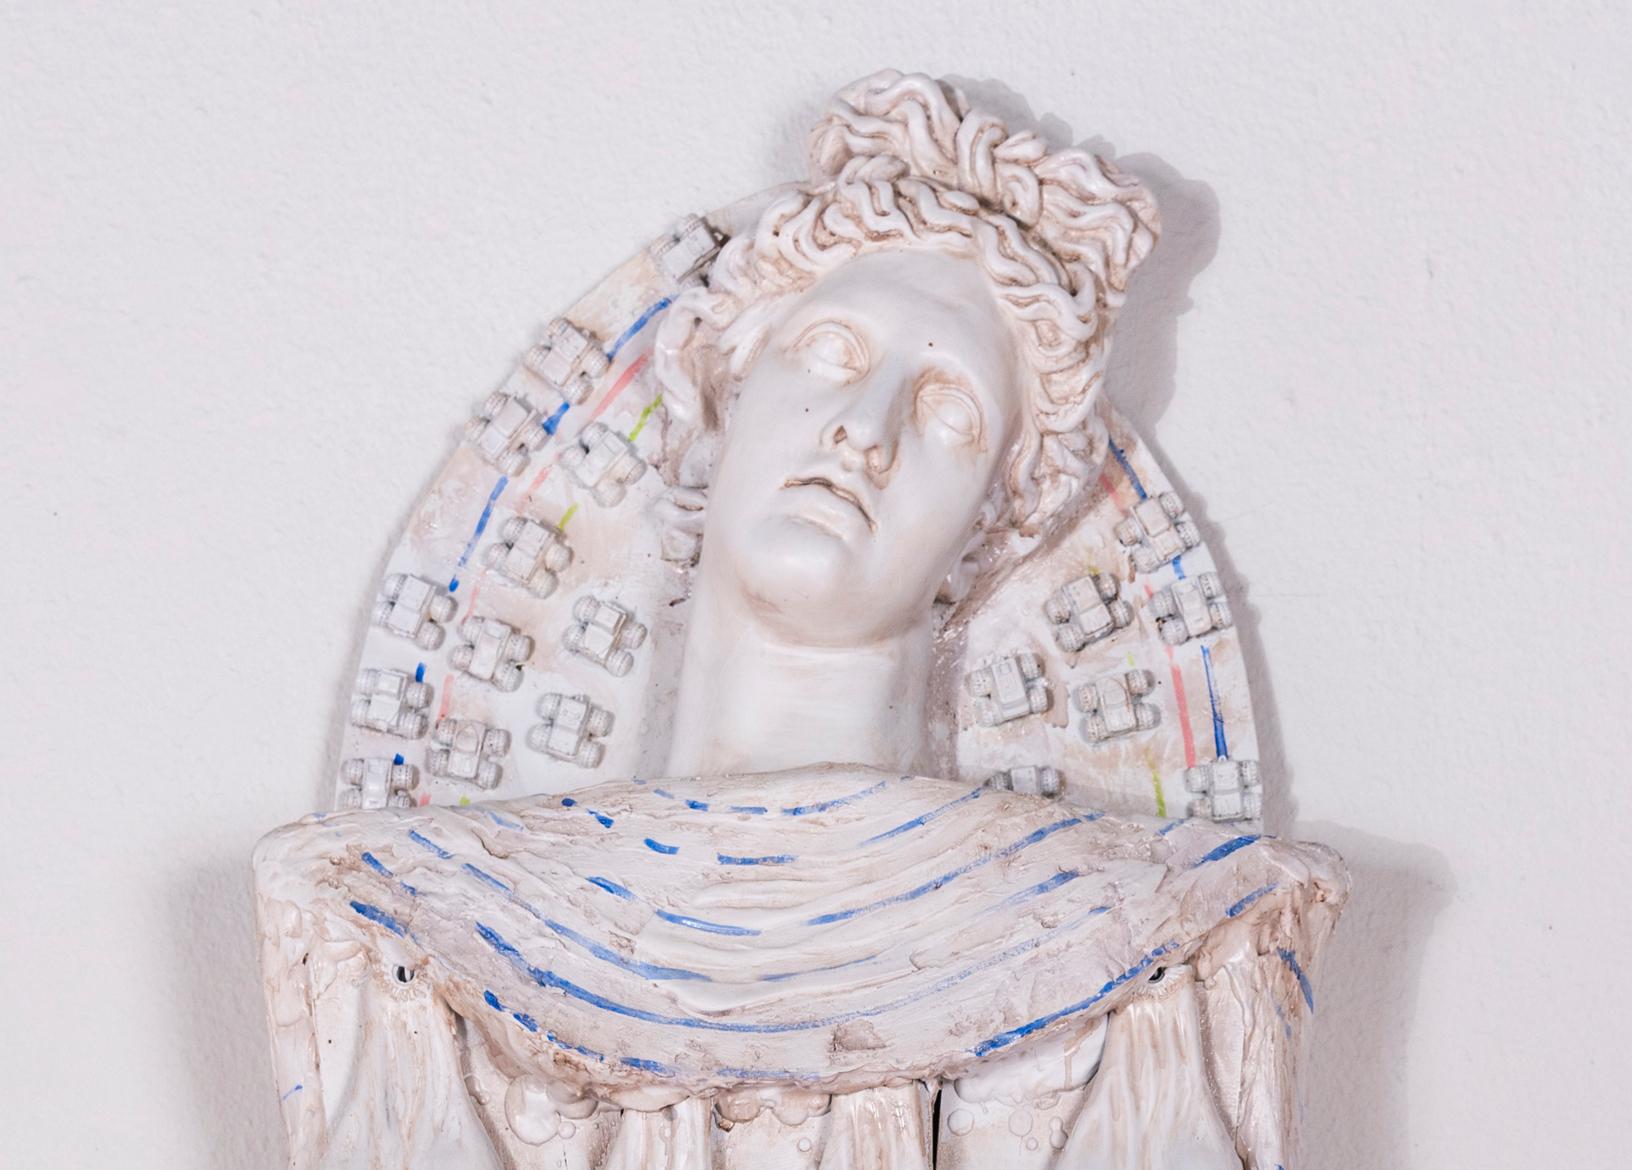 Mummy contemporaine, grande sculpture : Rhodman Artemis - Sculpture de Joshua Goode